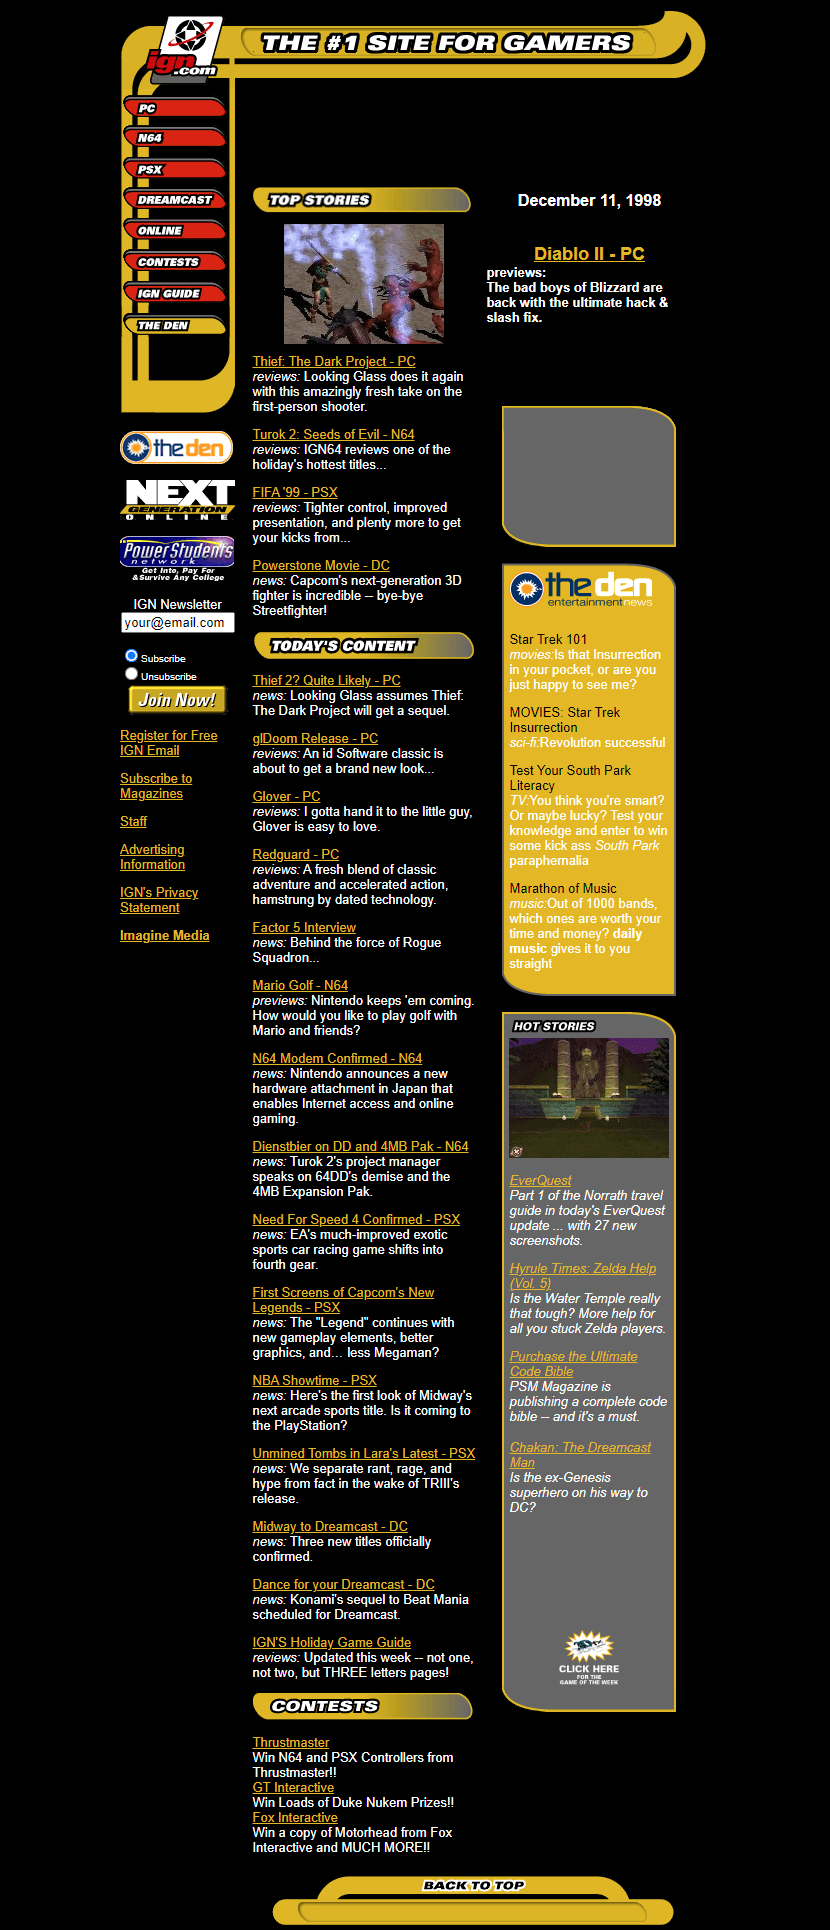 IGN in 1998